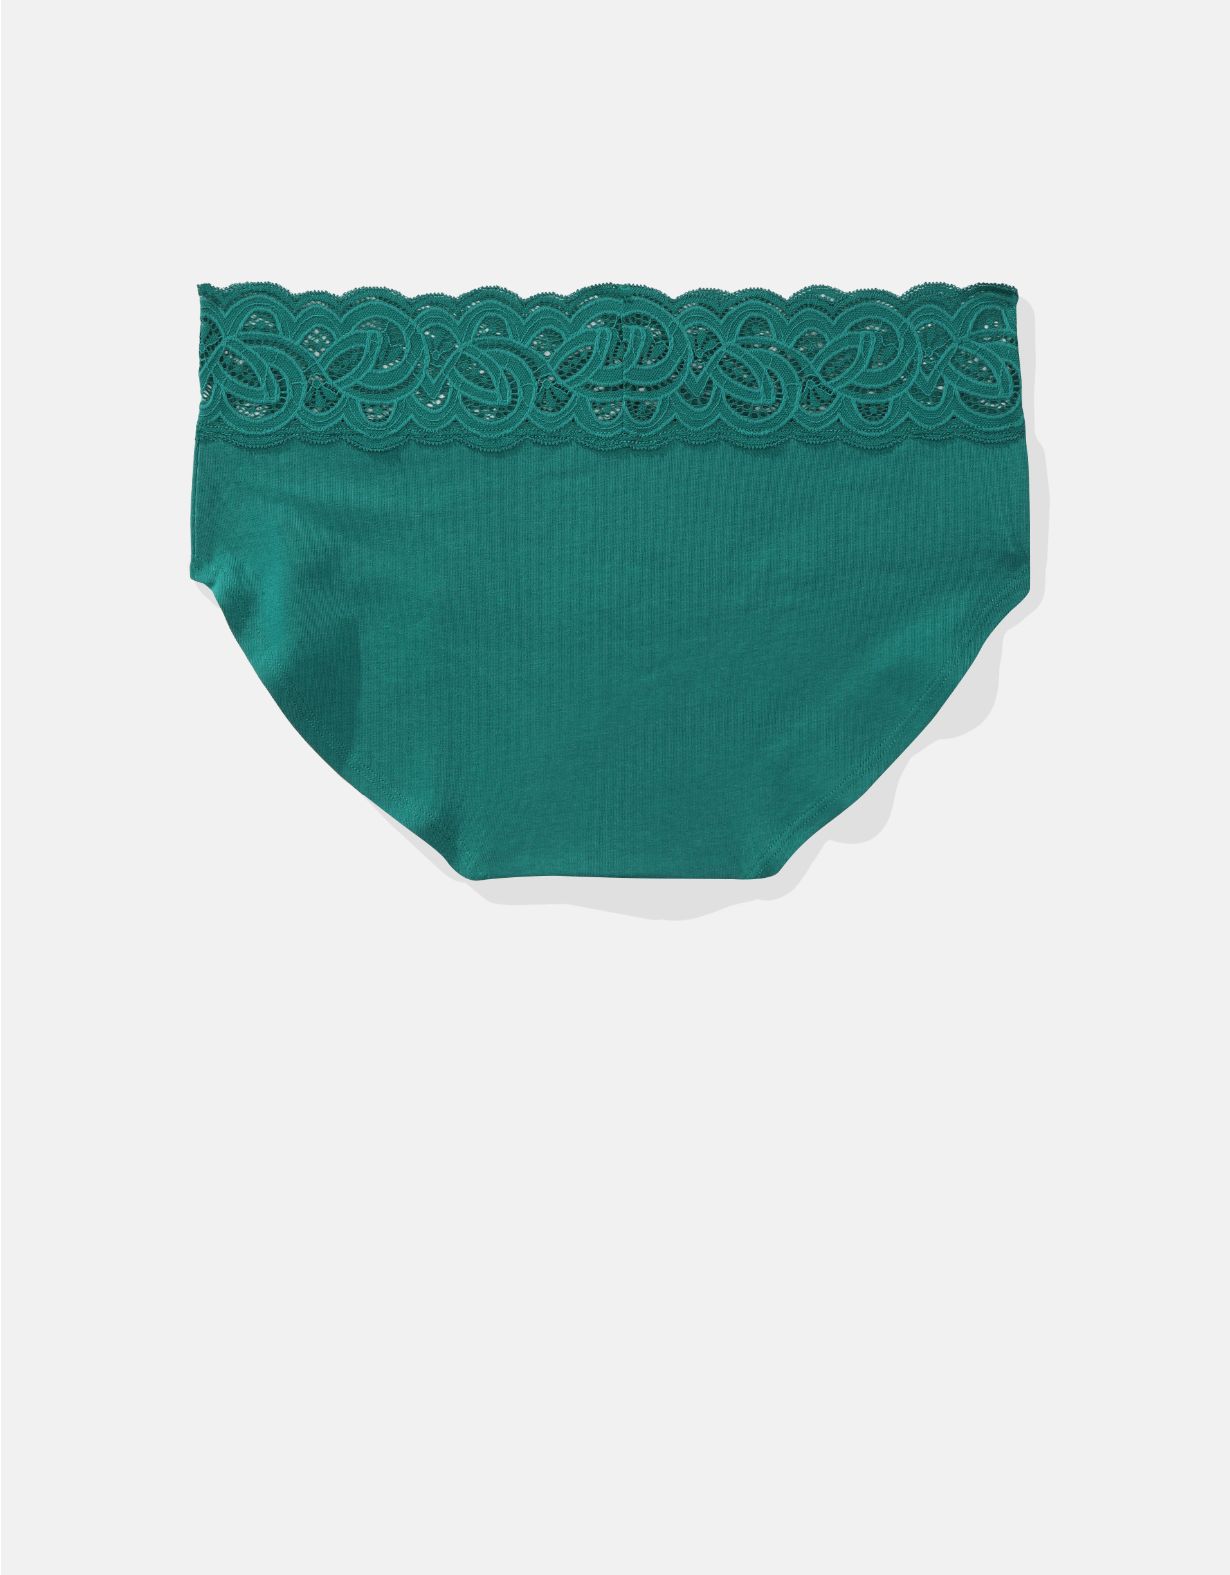 Superchill Cotton Rooftop Garden Lace Boybrief Underwear